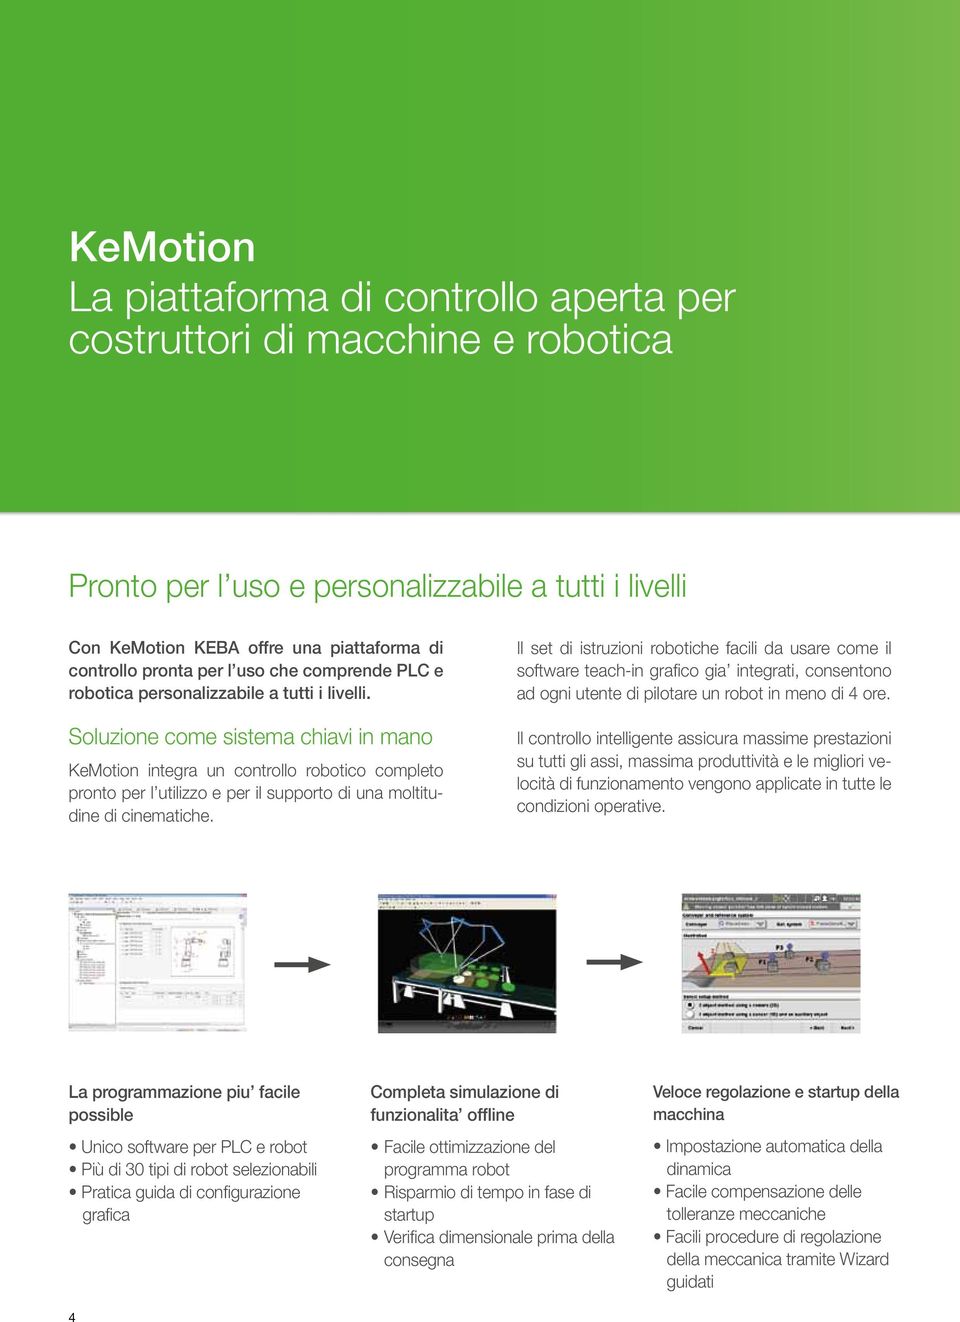 Soluzione come sistema chiavi in mano KeMotion integra un controllo robotico completo pronto per l utilizzo e per il supporto di una moltitudine di cinematiche.